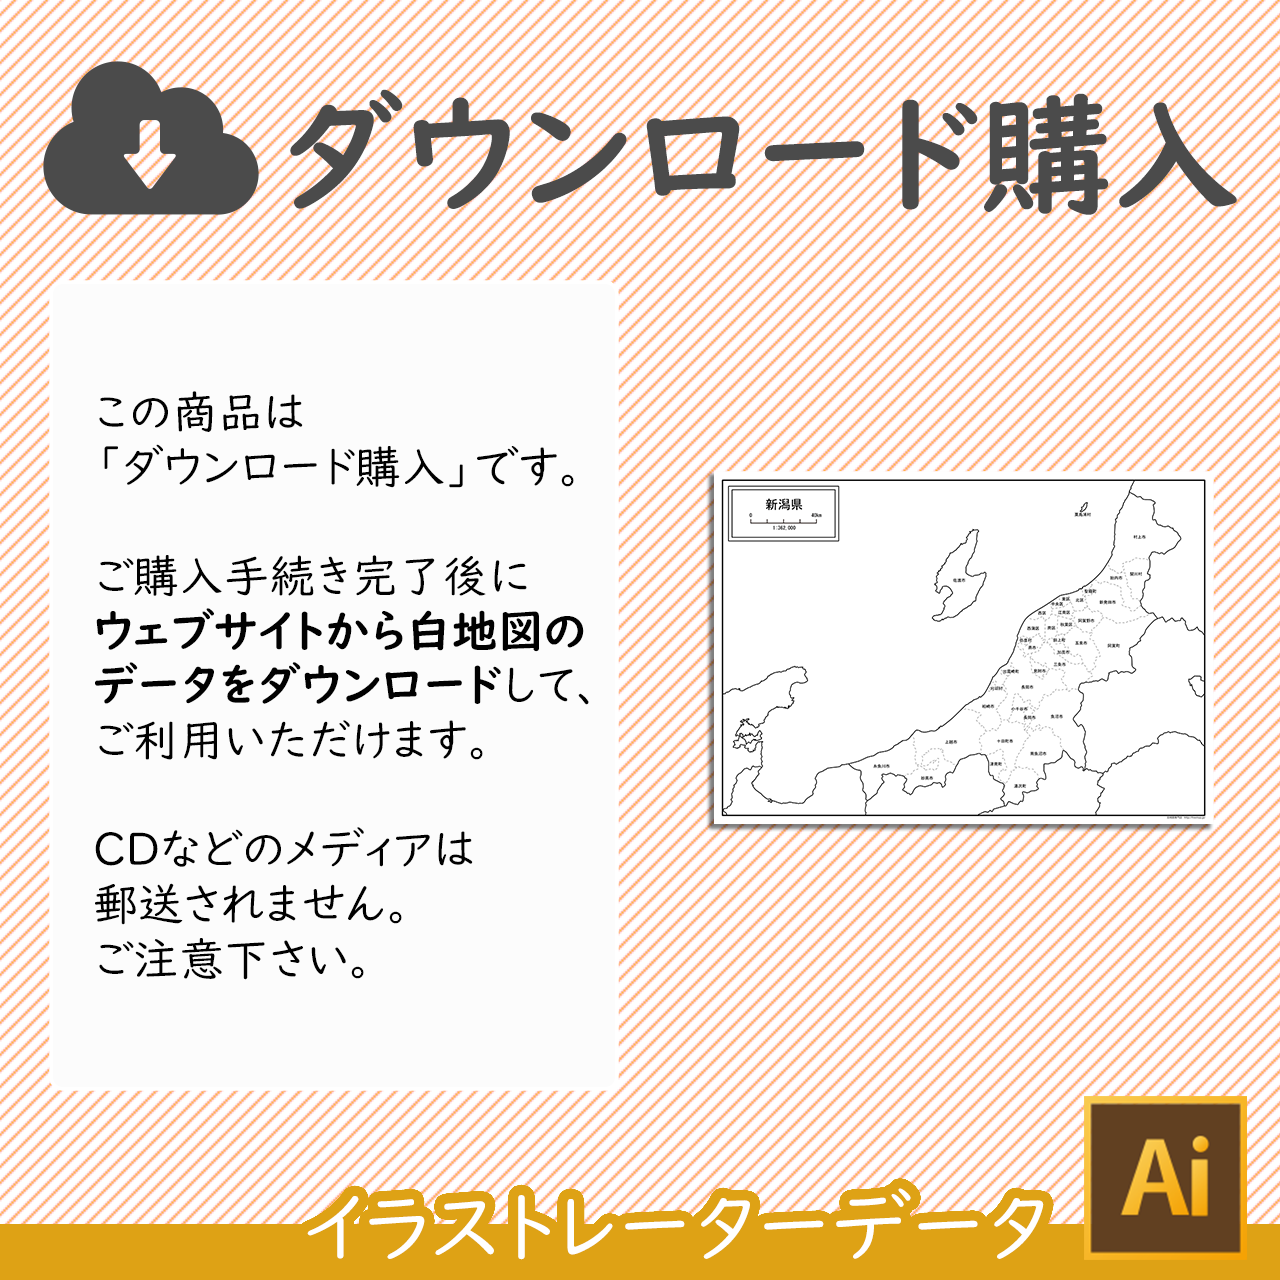 新潟県の白地図データ 白地図専門店